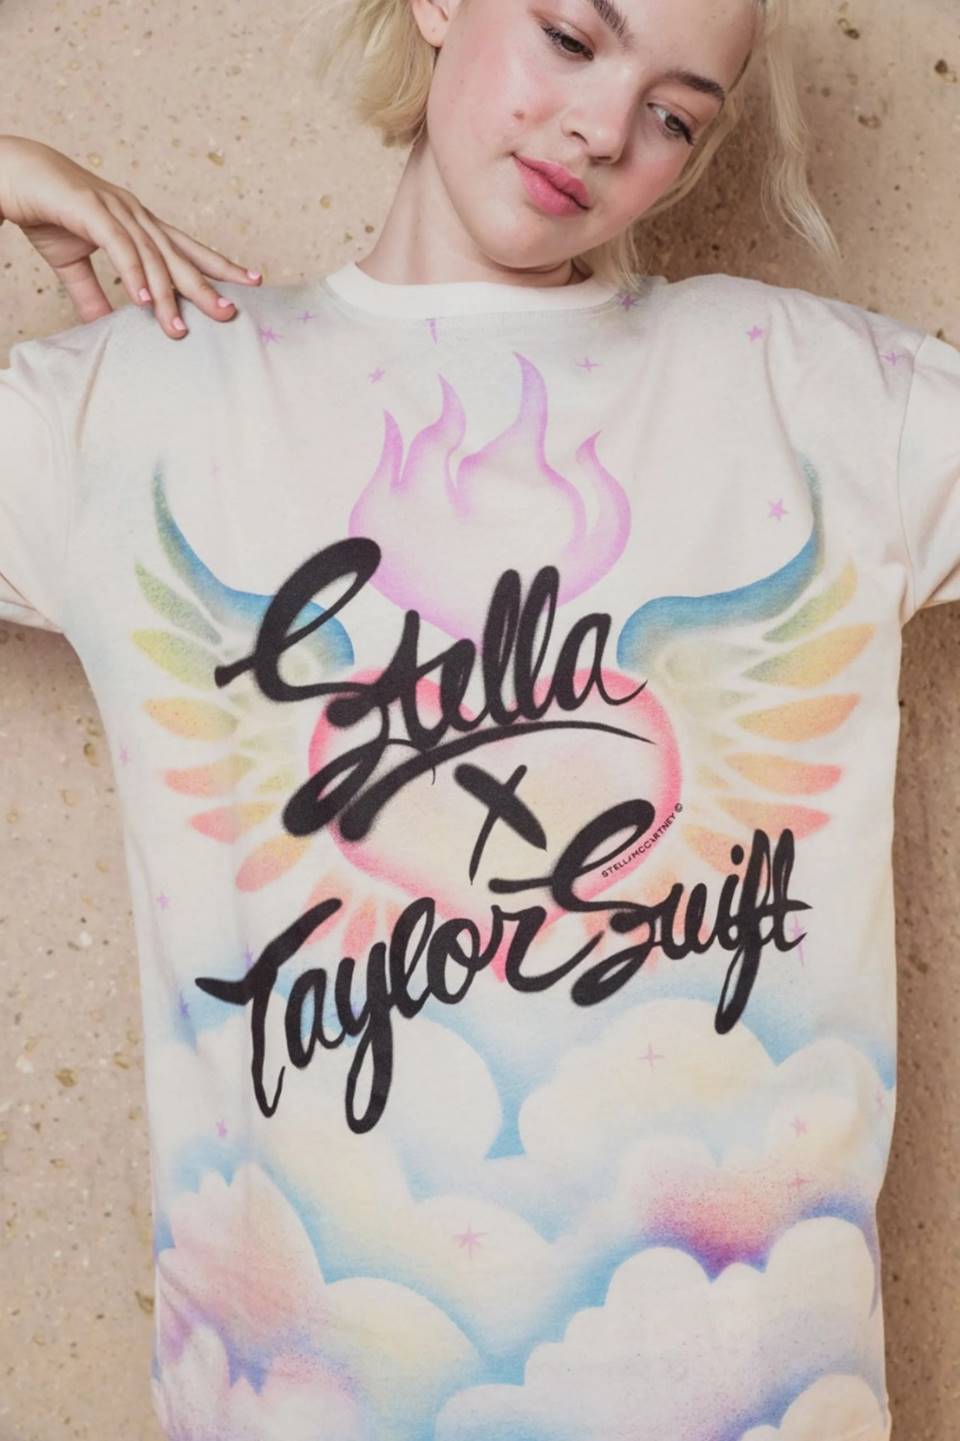 Reprodução/Stella x Taylor Swift